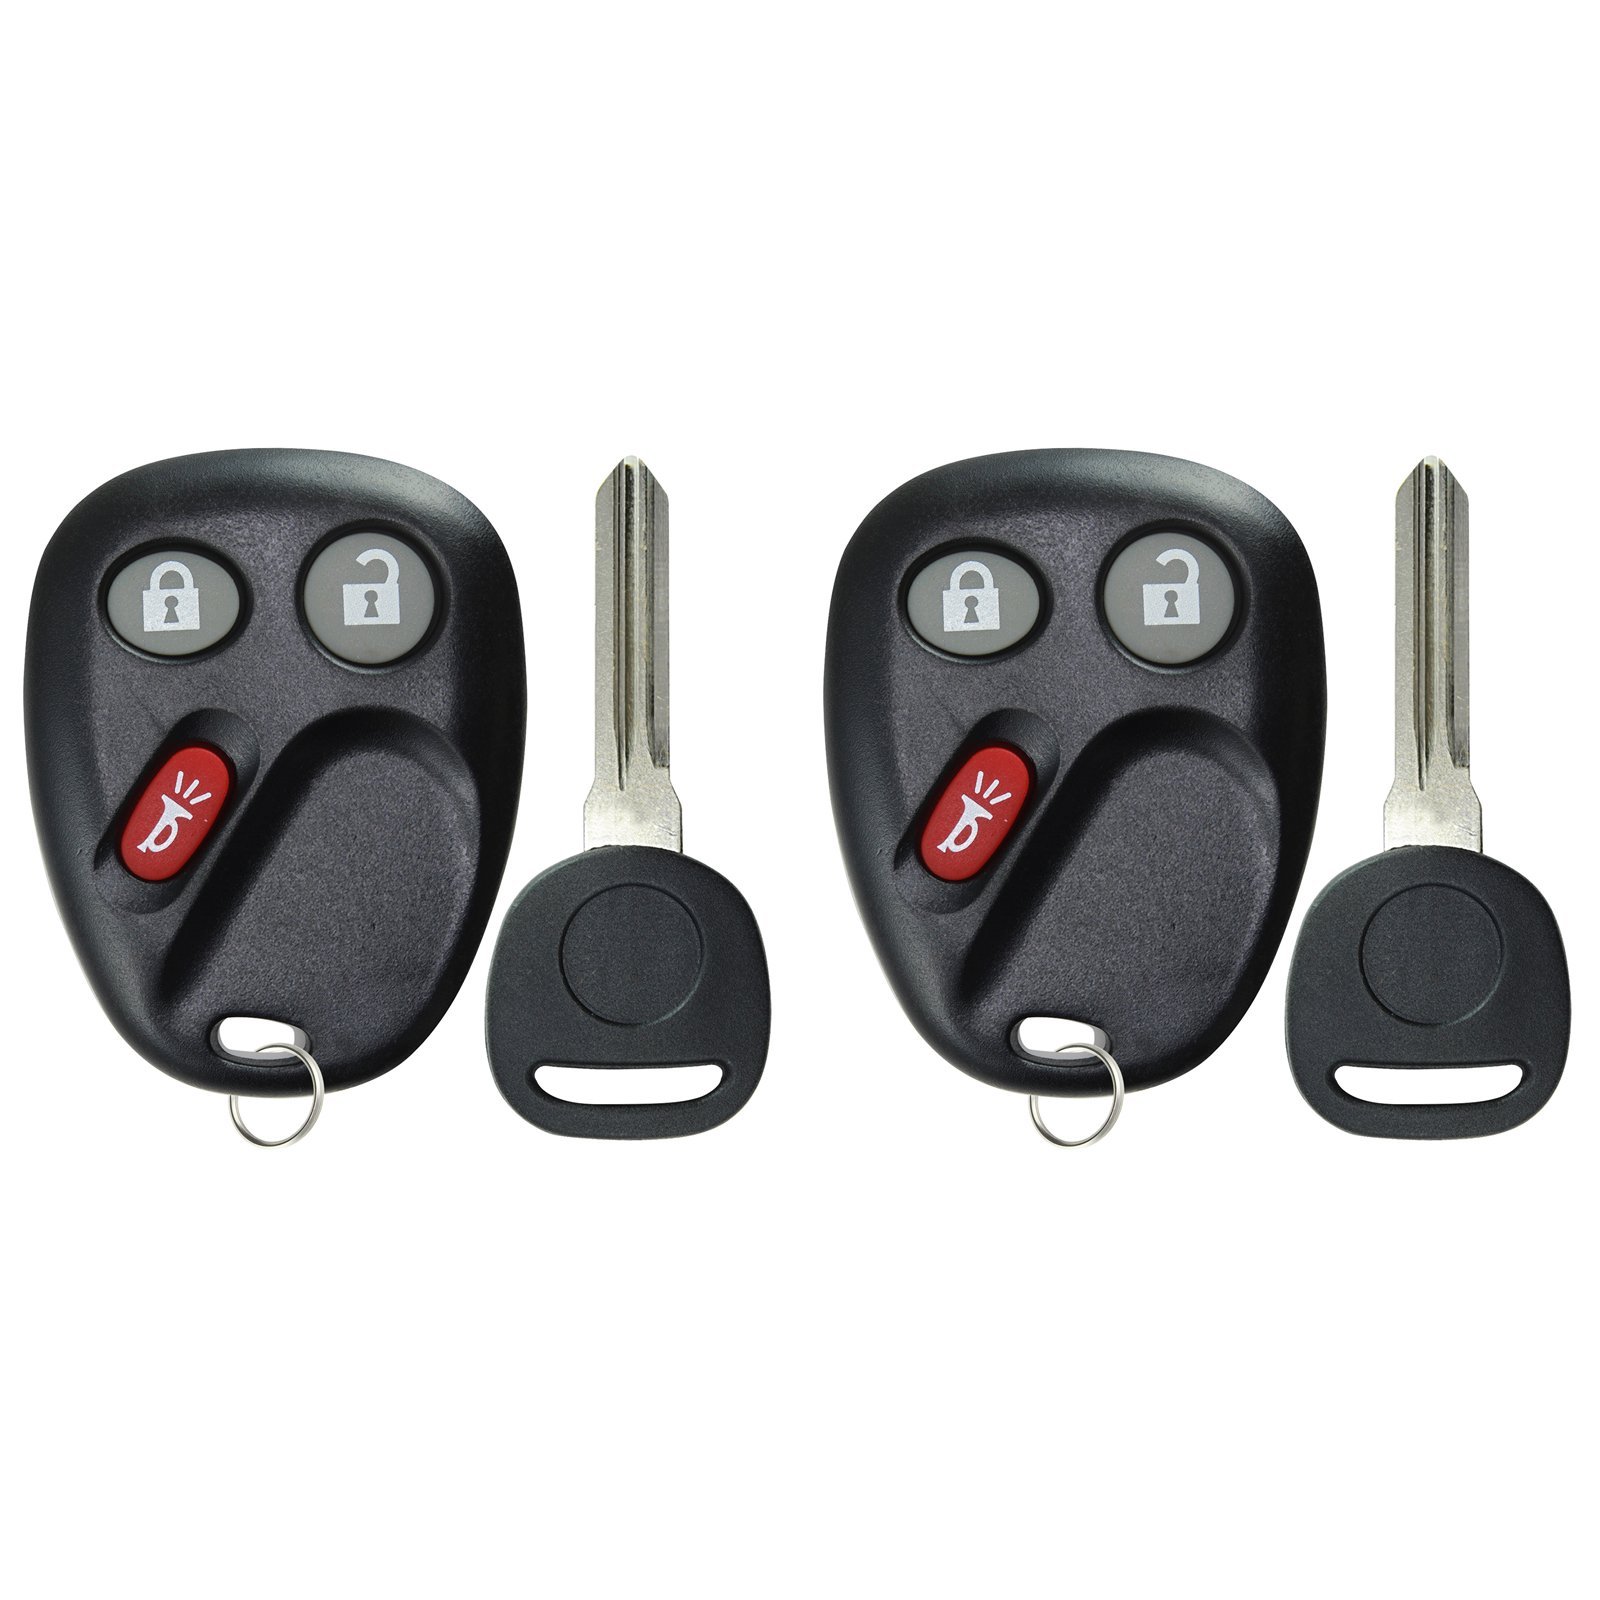 KeylessOption KeylessOption Schlüsselloser Entry Fernbedienung Autoschlüssel und Schlüssel Ersatz für 15008008, 15008009 von KeylessOption